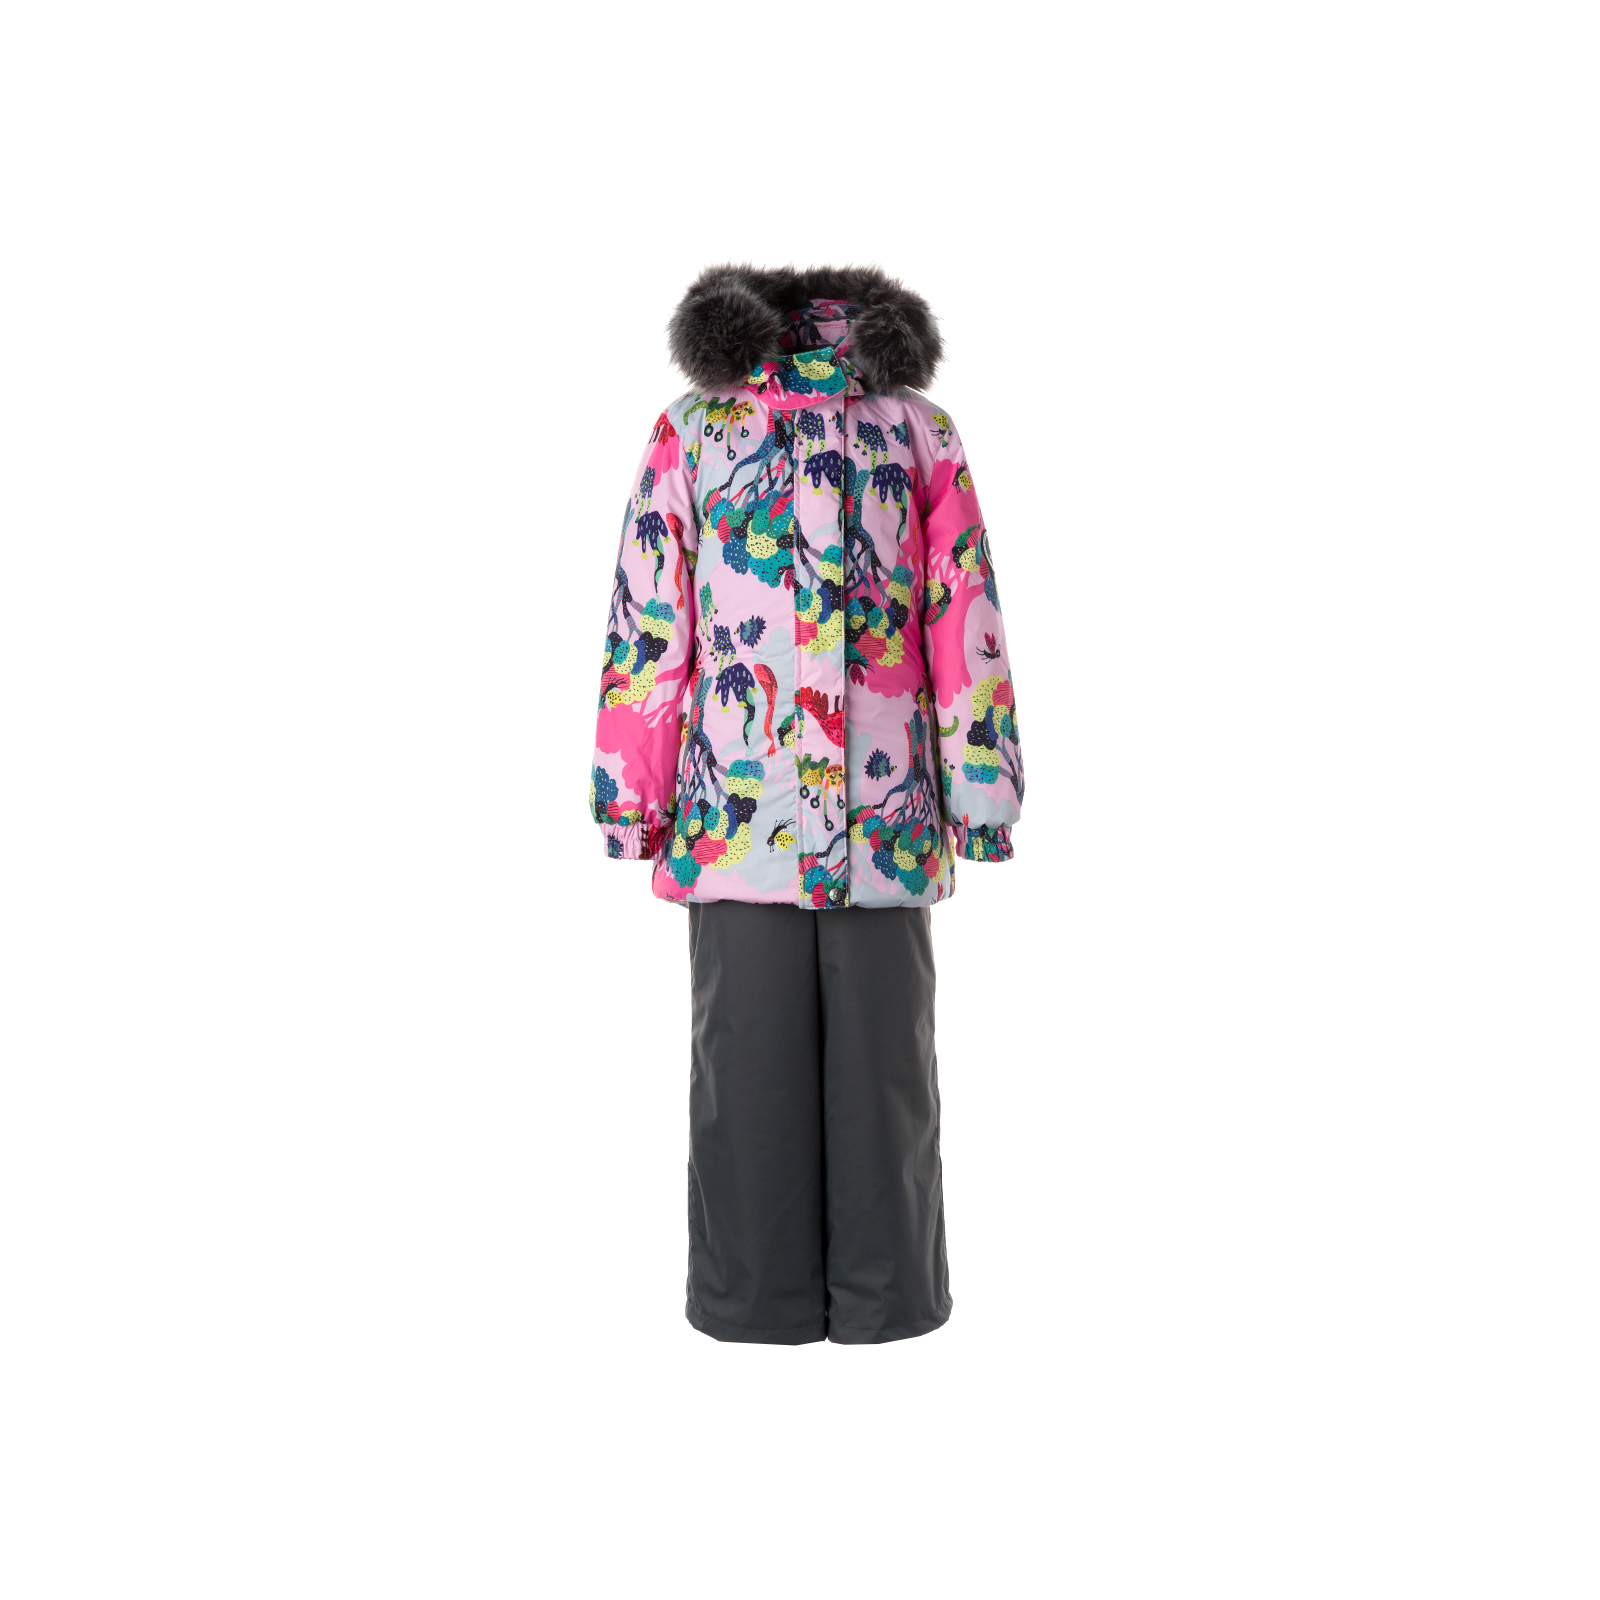 Комплект верхней одежды Huppa RENELY 2 41850230 cветло-розовый с принтом/серый 110 (4741468977751)